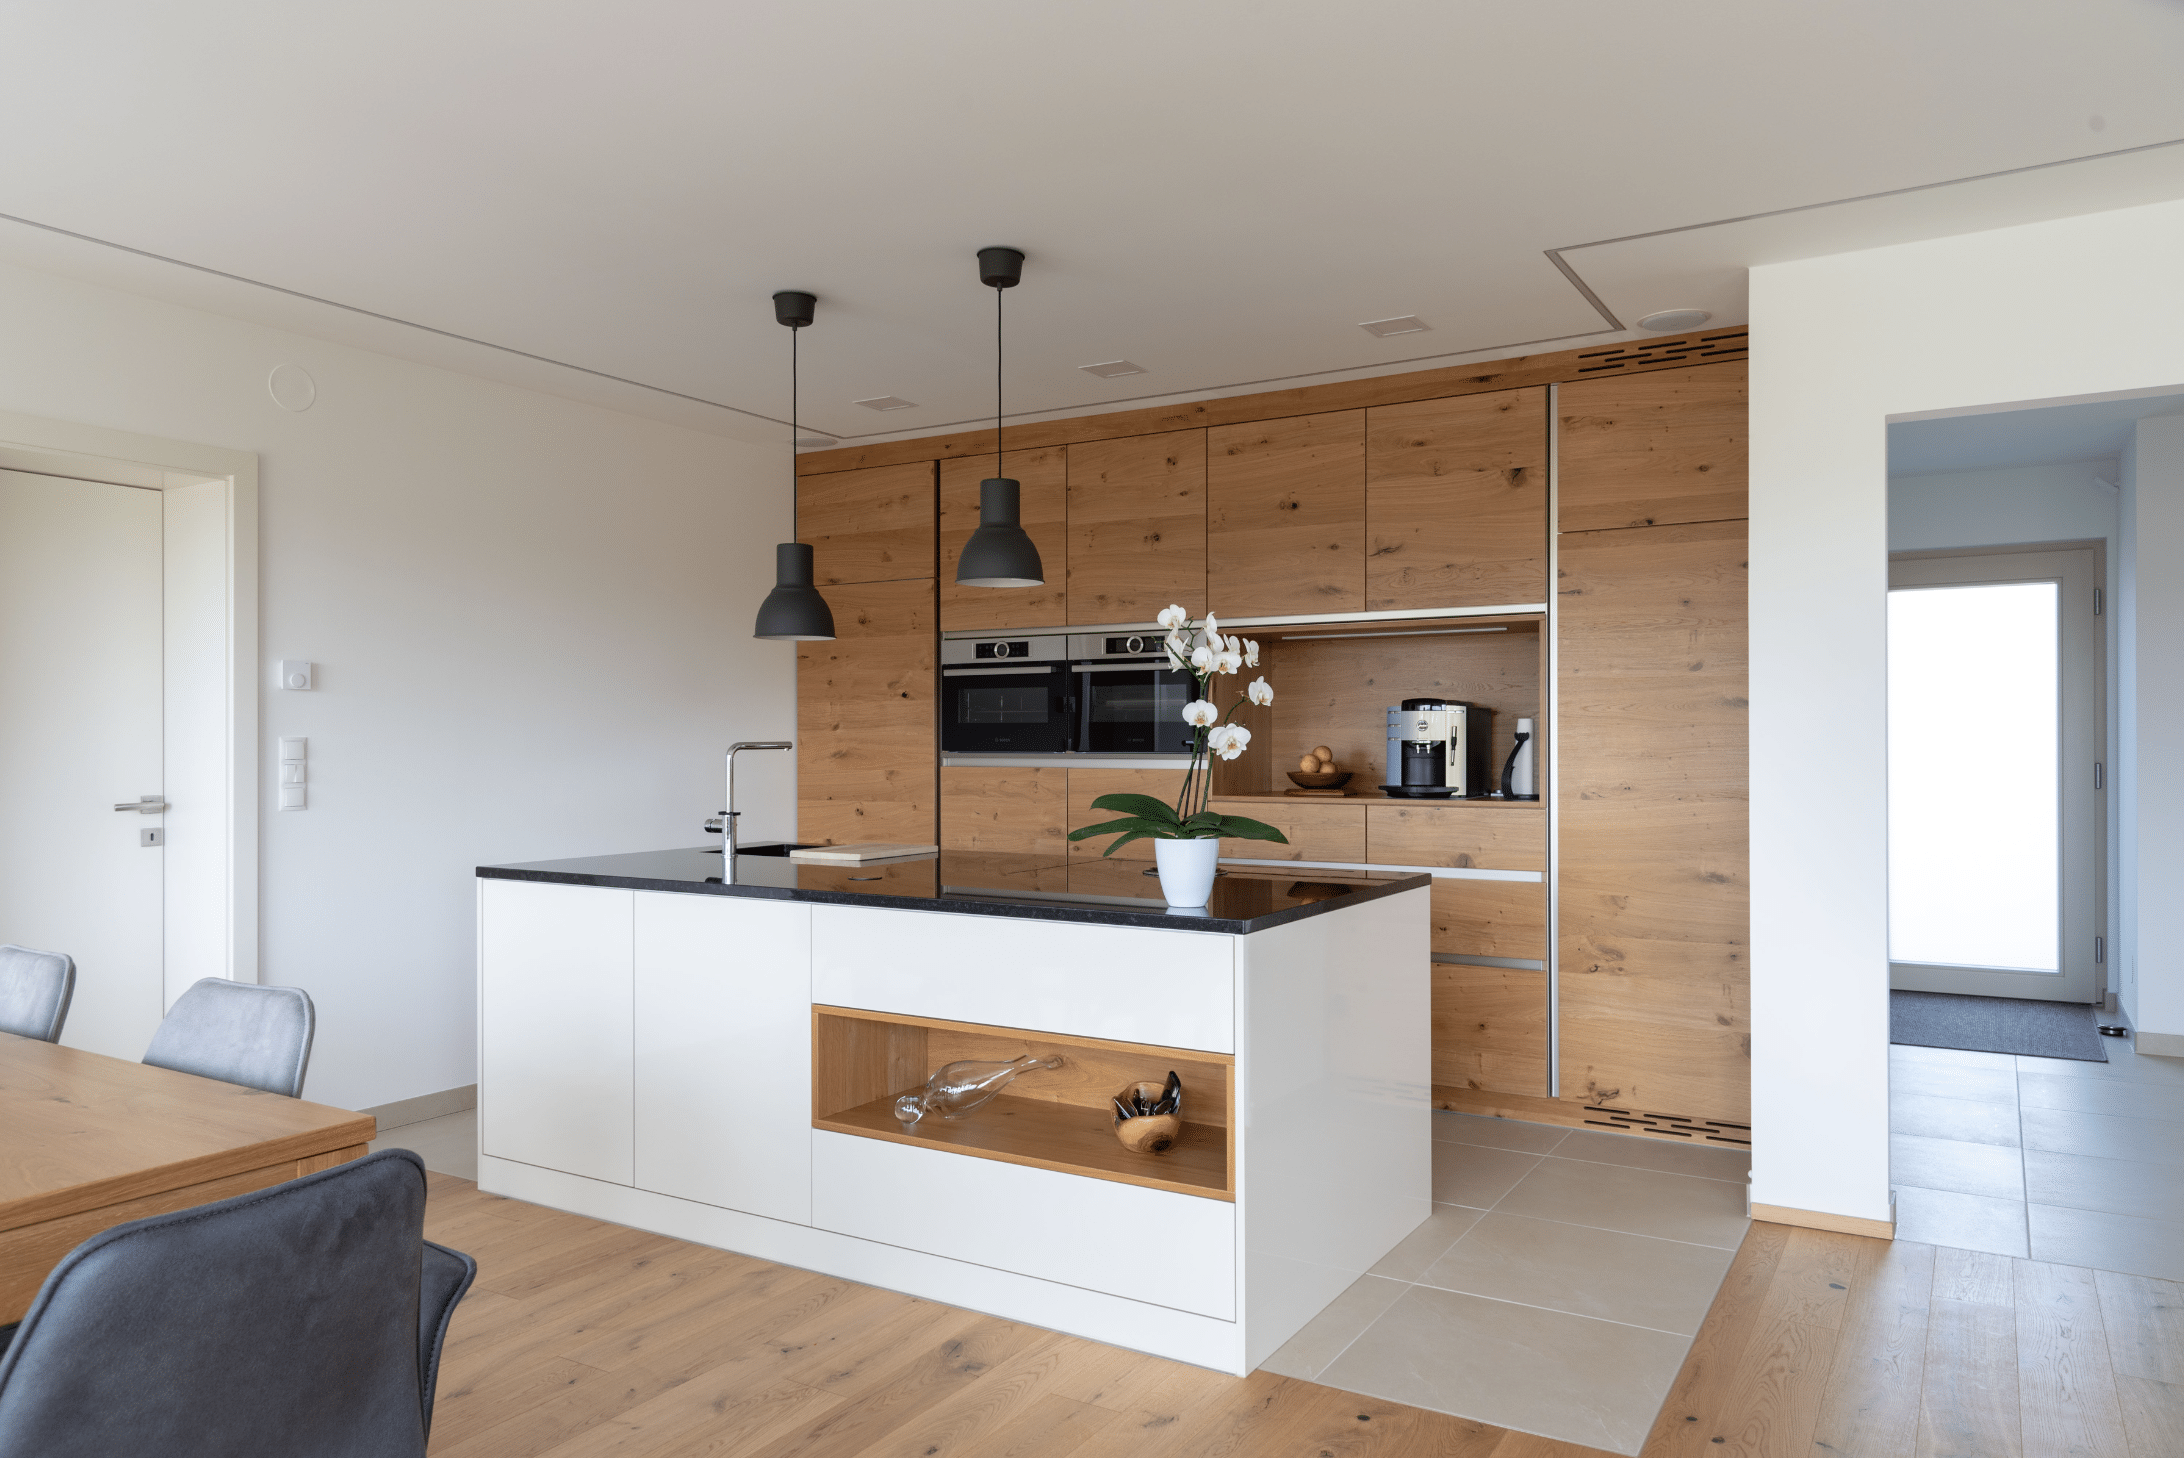 Hartl Haus zeigt eine Küche aus Holz mit weißen Elementen, zwei Backöfen, und schwarzen von der Decke hängenden Lampen.